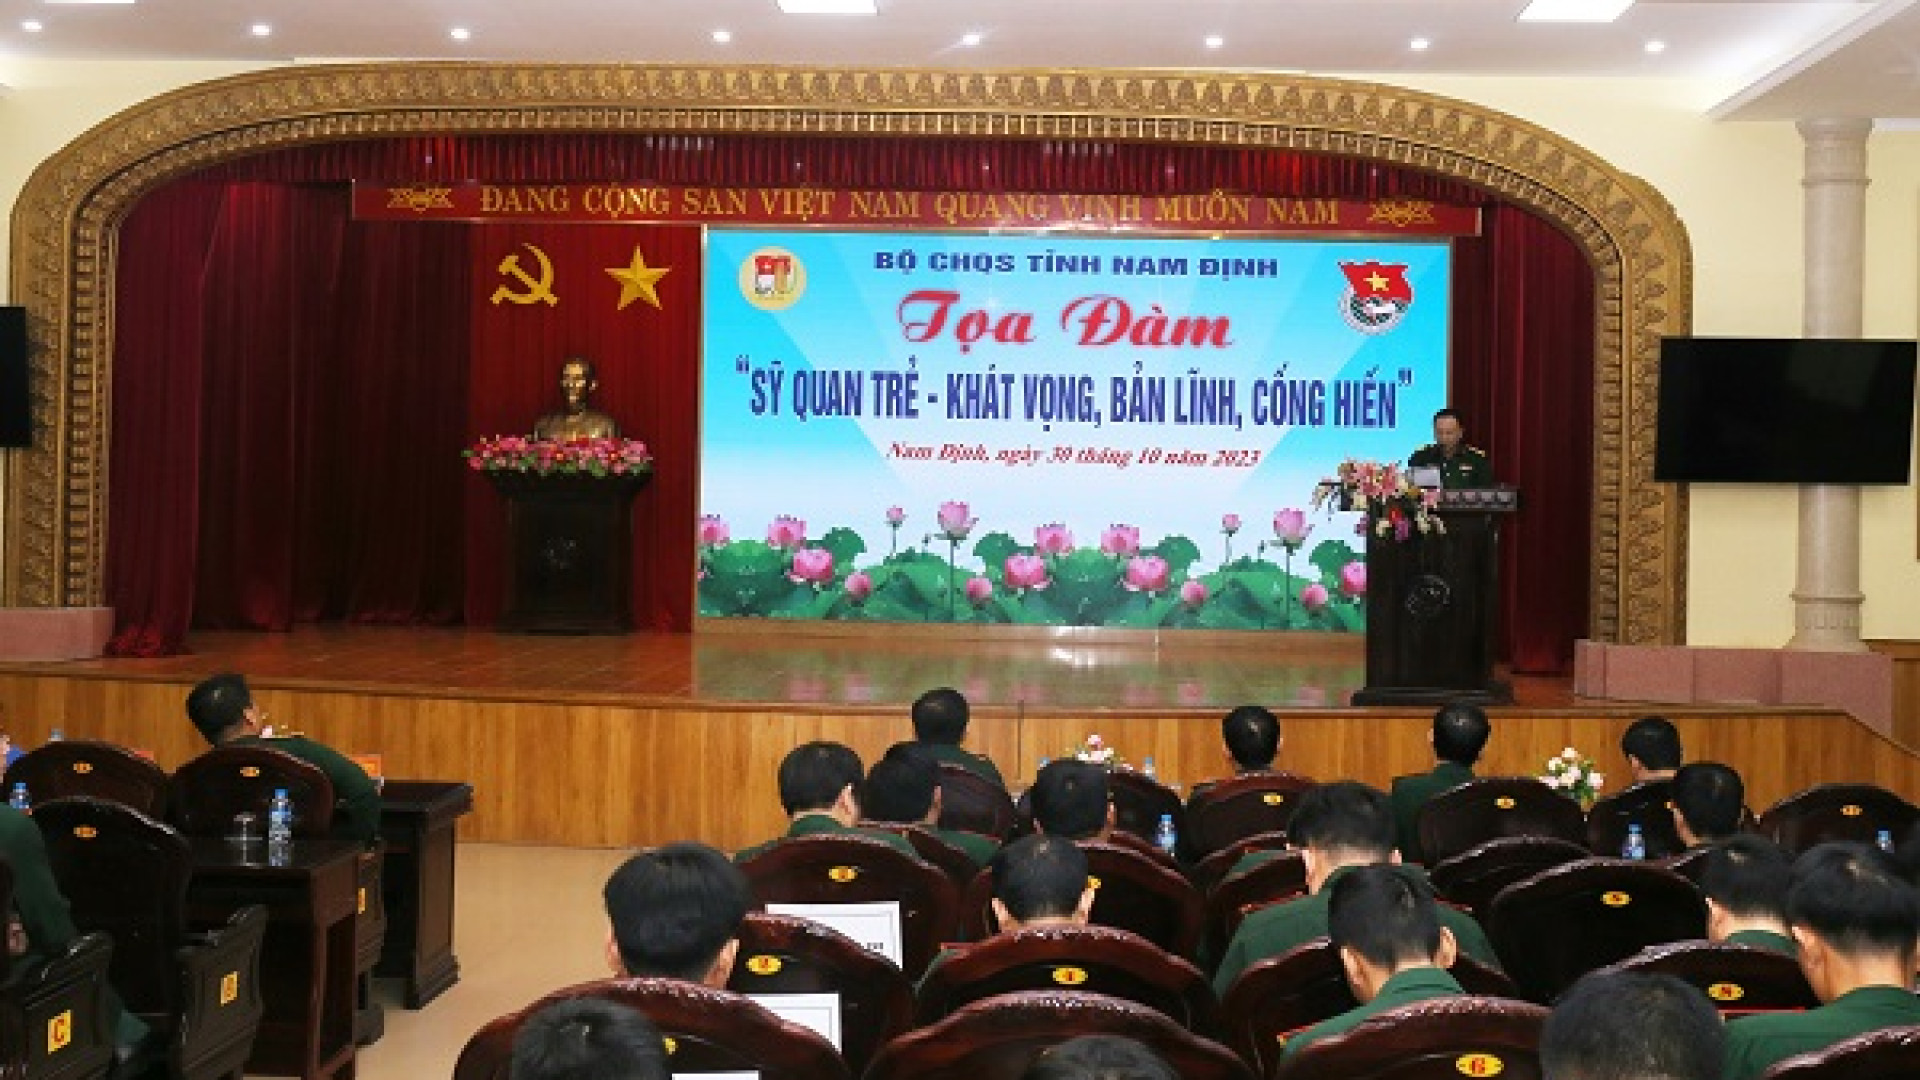 Bộ CHQS tỉnh Nam Định: Tọa đàm “Sĩ quan trẻ - Khát vọng, bản lĩnh, cống hiến”